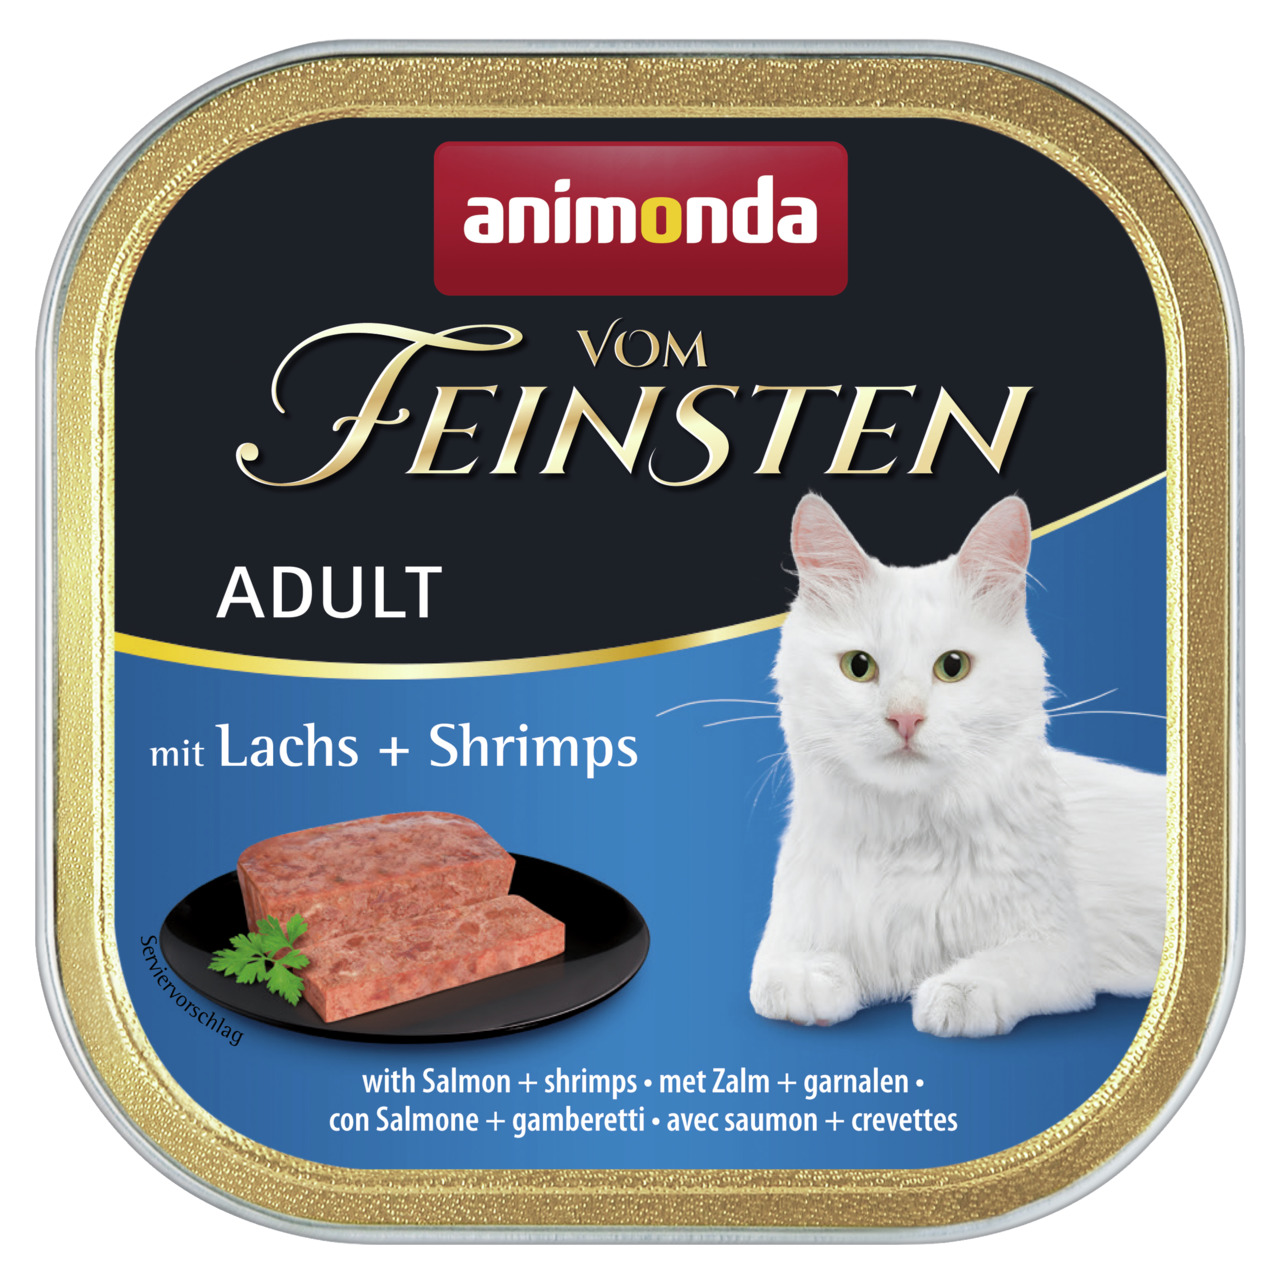 Animonda Vom Feinsten Adult mit Lachs + Shrimps Katzen Nassfutter 100 g